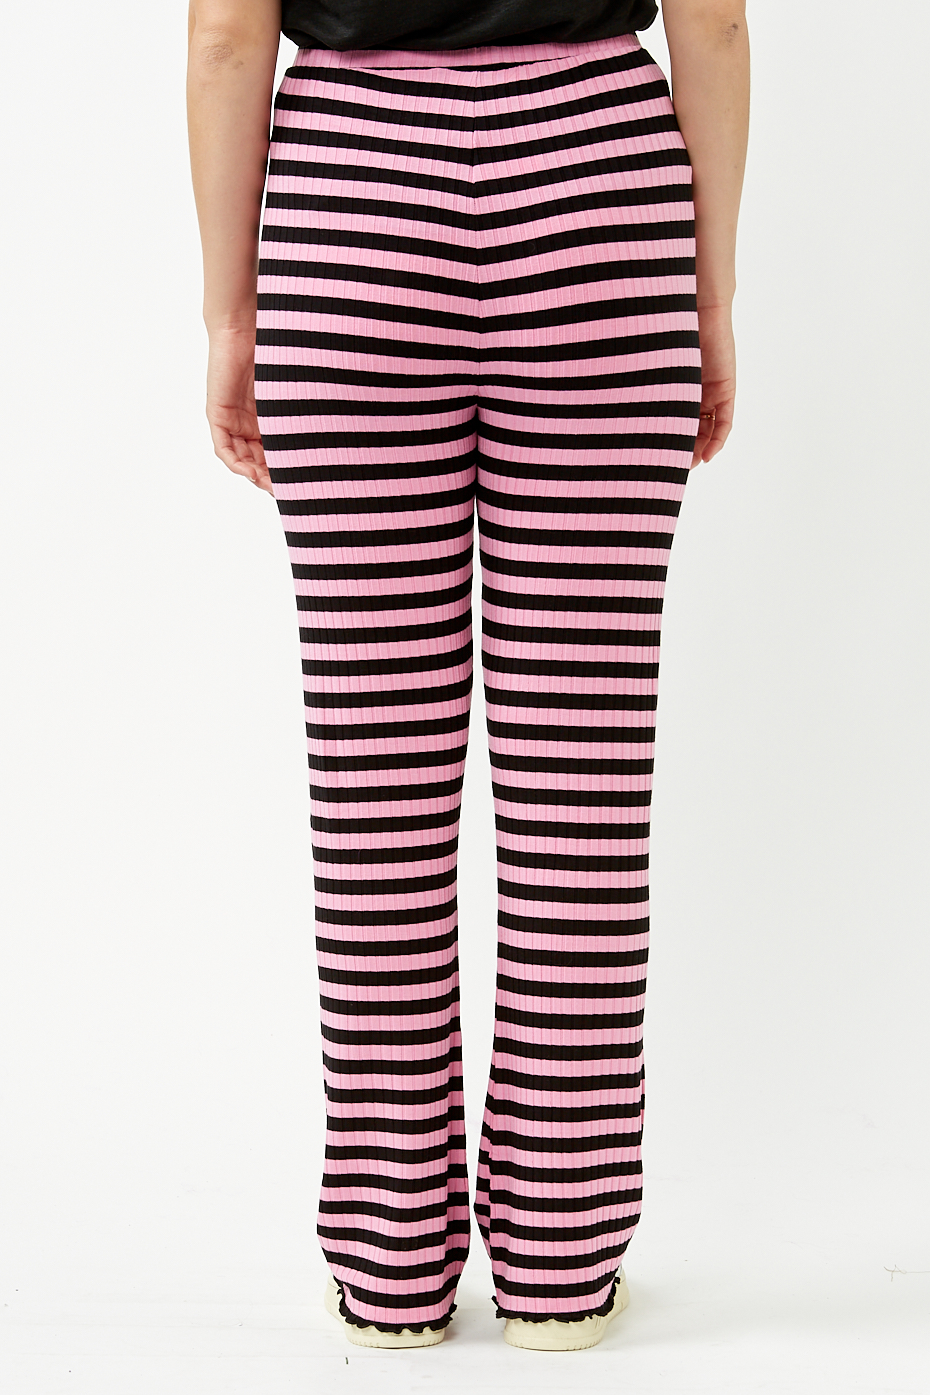 mads-norgaard-stripe-begonia-pink-5x5-lonnie-pants